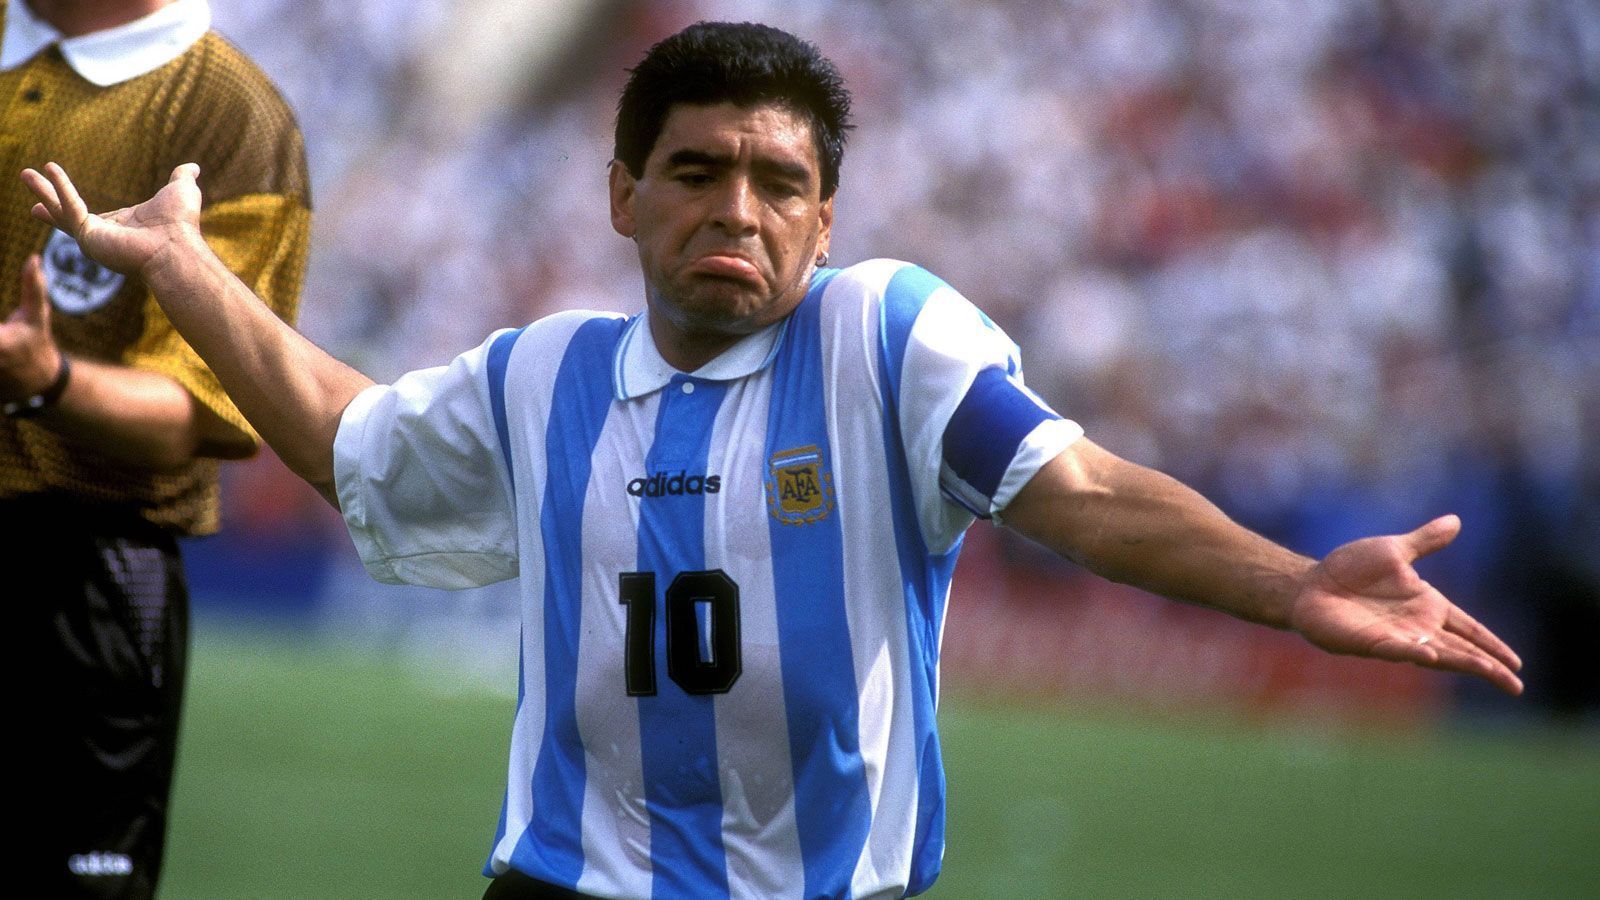 
                <strong>Kokain und Drogen</strong><br>
                Leider widmete sich Maradona immer wieder dem Drogenkonsum. 1991 wurde er nach einer positiven Dopingprobe für 15 Monate gesperrt. Bei der WM 1994 wurden Maradona ebenfalls verbotene Substanzen nachgewiesen. Die nächste 15-monatige Sperre folgte. Seine Nationalmannschaftskarriere (91 Spiele, 34 Tore) war offiziell beendet. Doch er konnte es nicht lassen. 2004 brachte ihn die Kokainsucht erneut in akute Lebensgefahr.
              